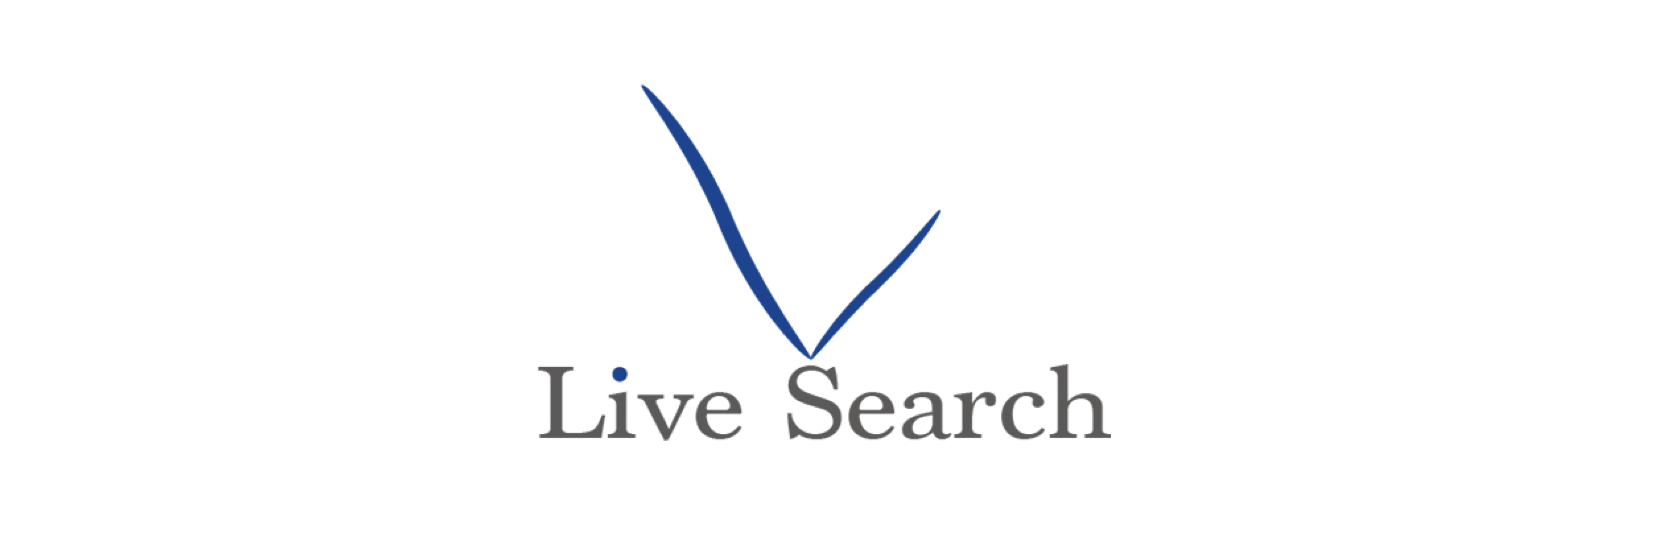 株式会社Live Search